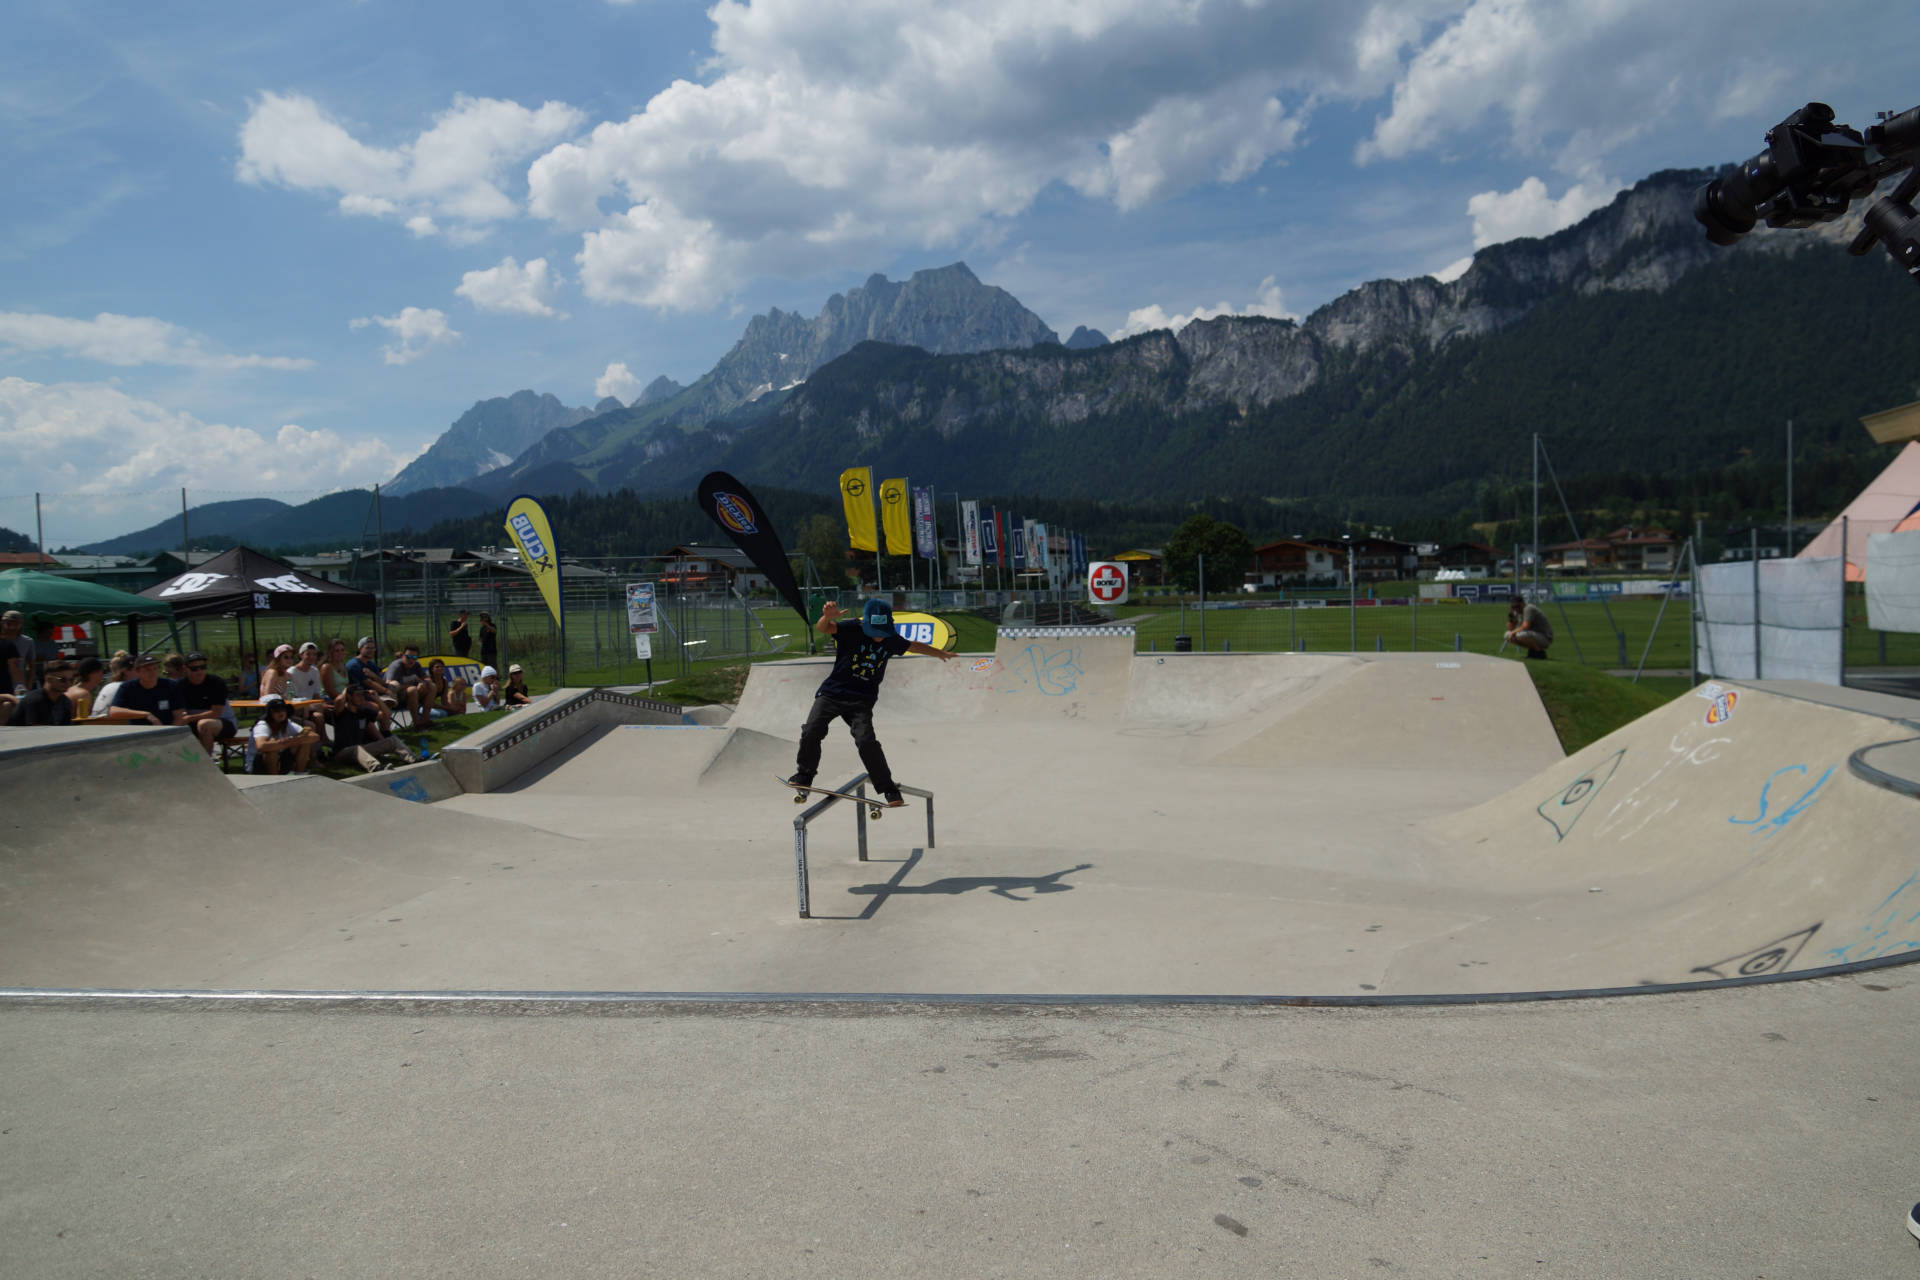 skateboardheadz st johann in tirol kgt 2019 finale 00009